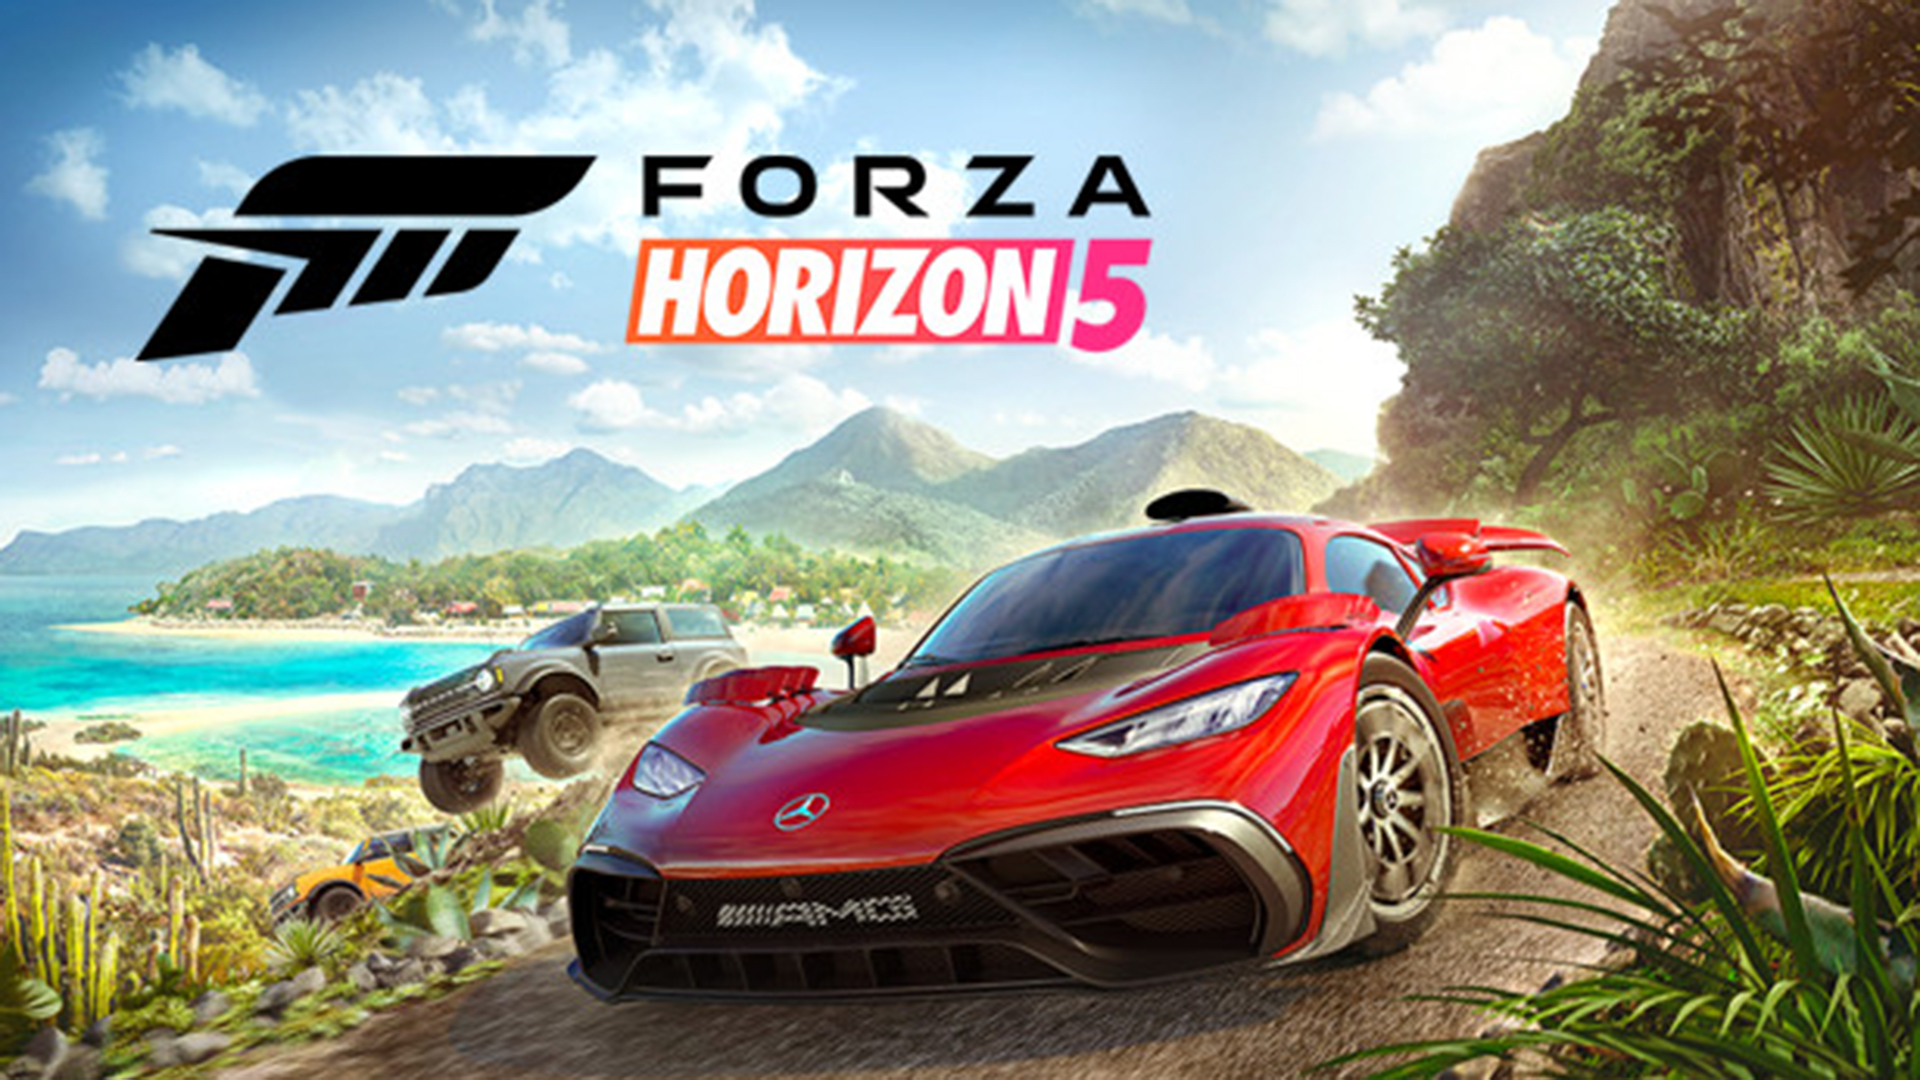 Forza Horizon 5 punainen auto ajamassa kilpaa jeepiä vastaan rantamaisemassa